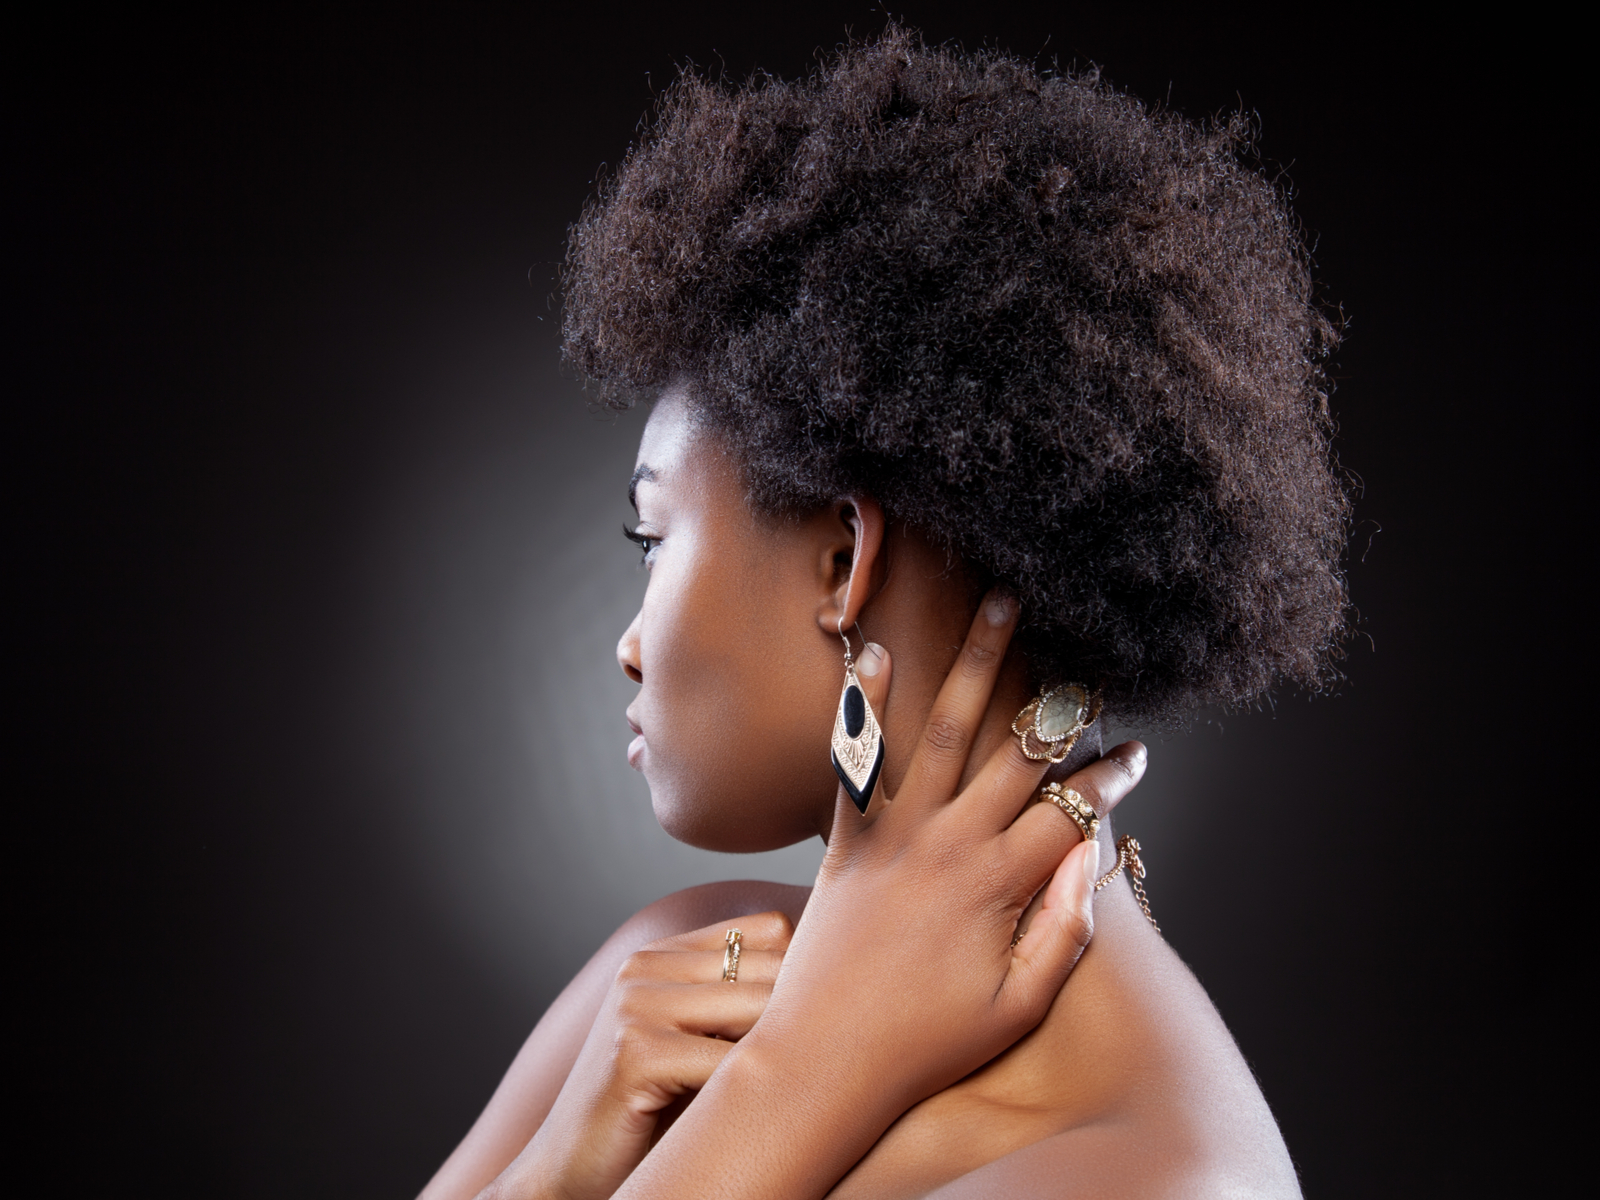 Als idee voor korte kapsels voor zwarte vrouwen, draagt een jonge vrouw de Tapered 4C Afro stijl.